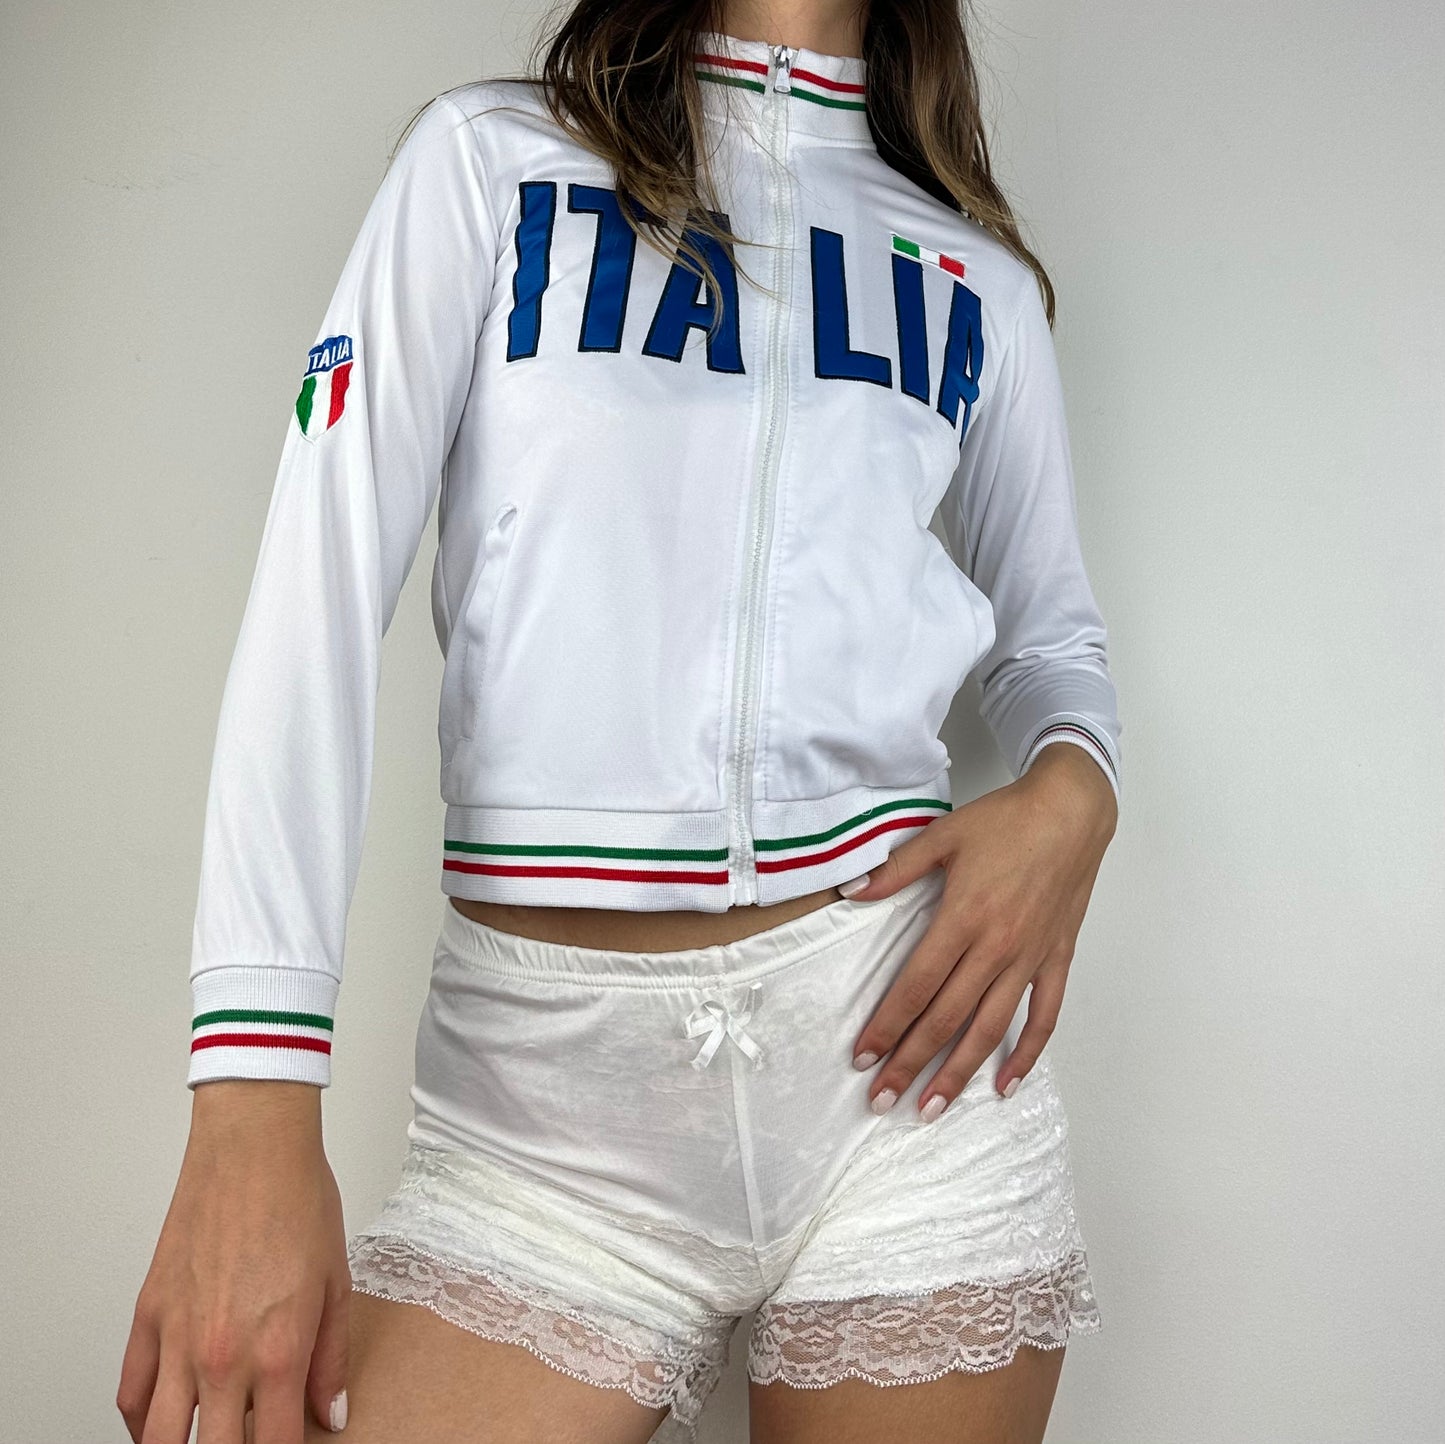 Italia Zip Up